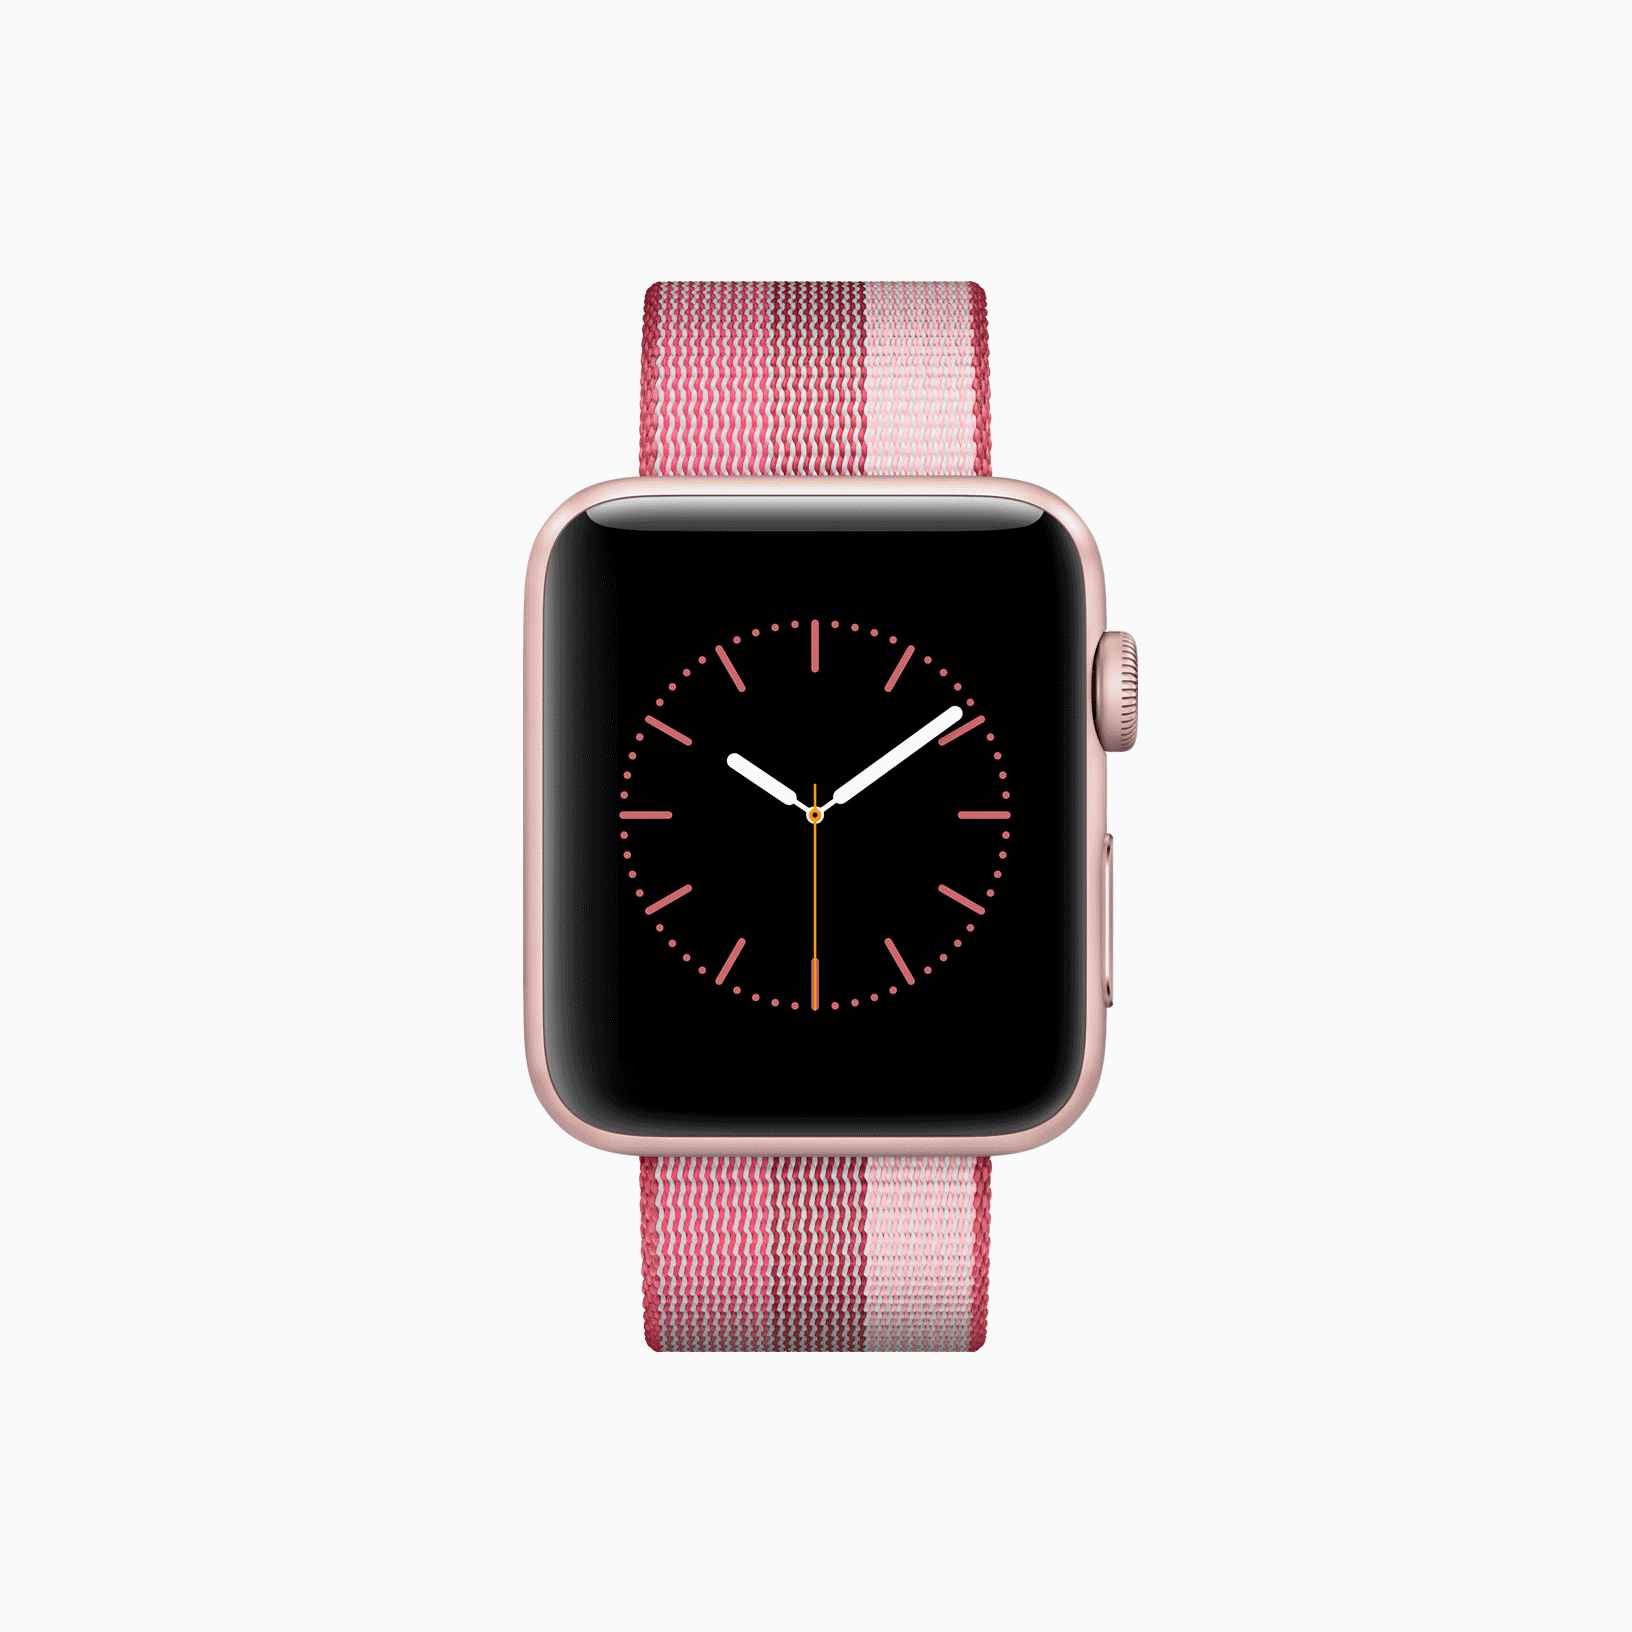 Novas pulseiras para o Apple Watch